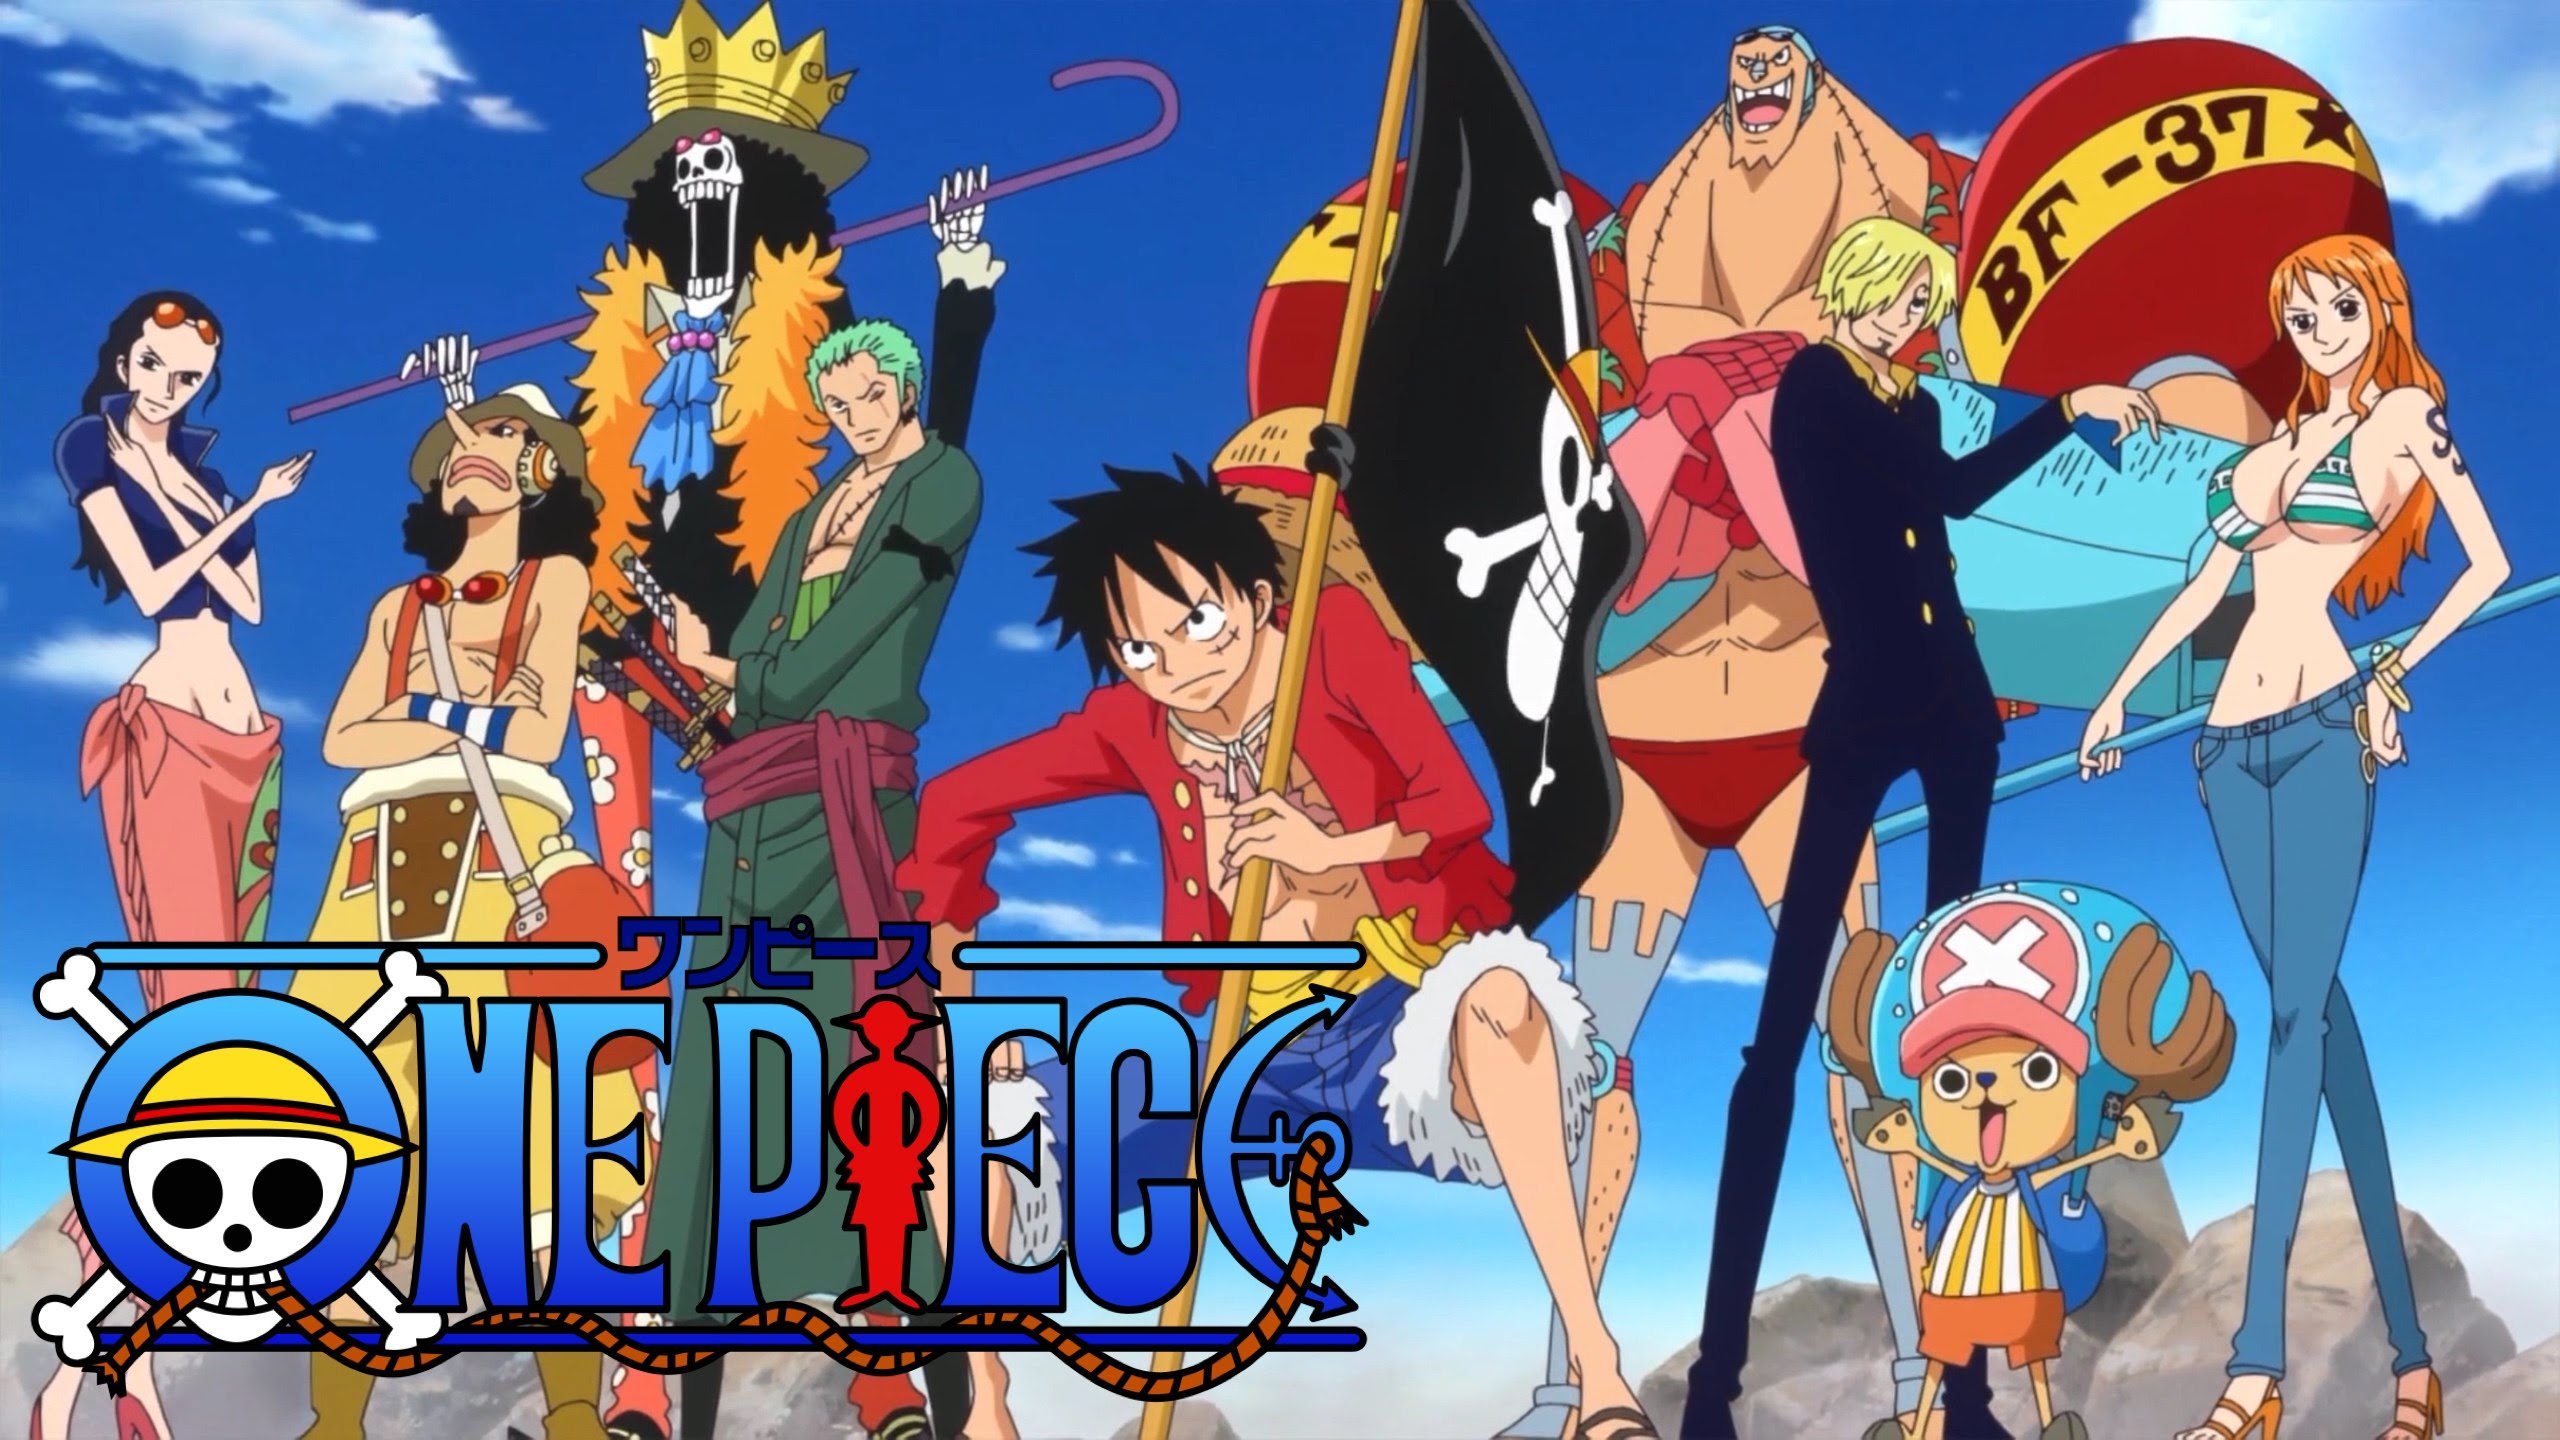 世間鮮有 One Piece 將會有限期地休刊 New Mobilelife 流動日報